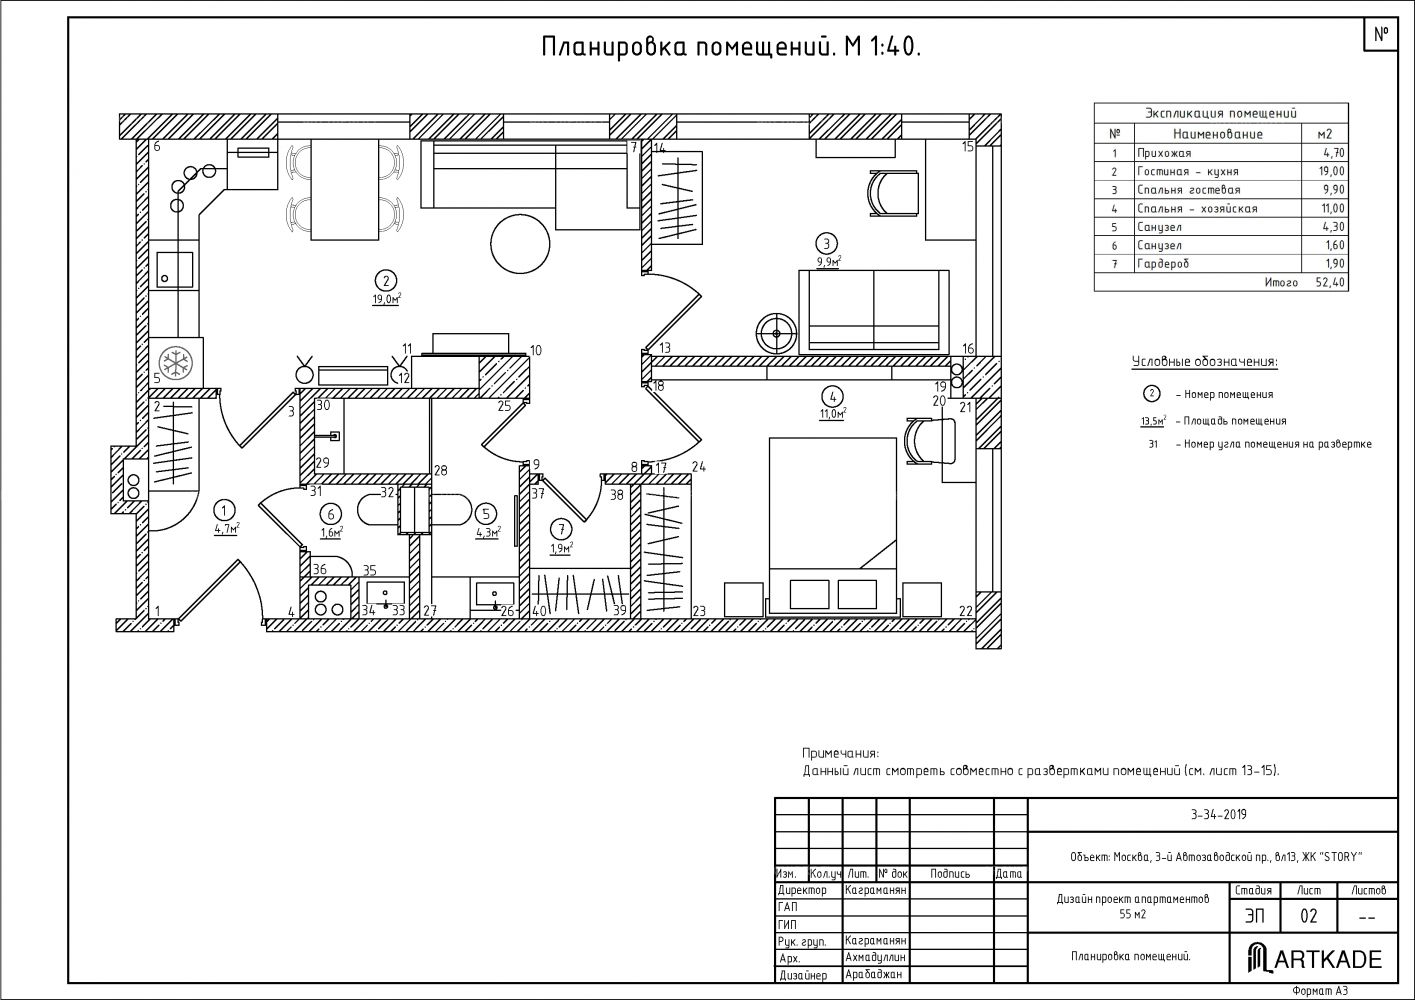 Документация интерьера, чертеж площадью 52 кв.м. Проект План помещения - Апартаменты в классическом стиле, Автор проекта: Архитекторы Юрий Каграманян